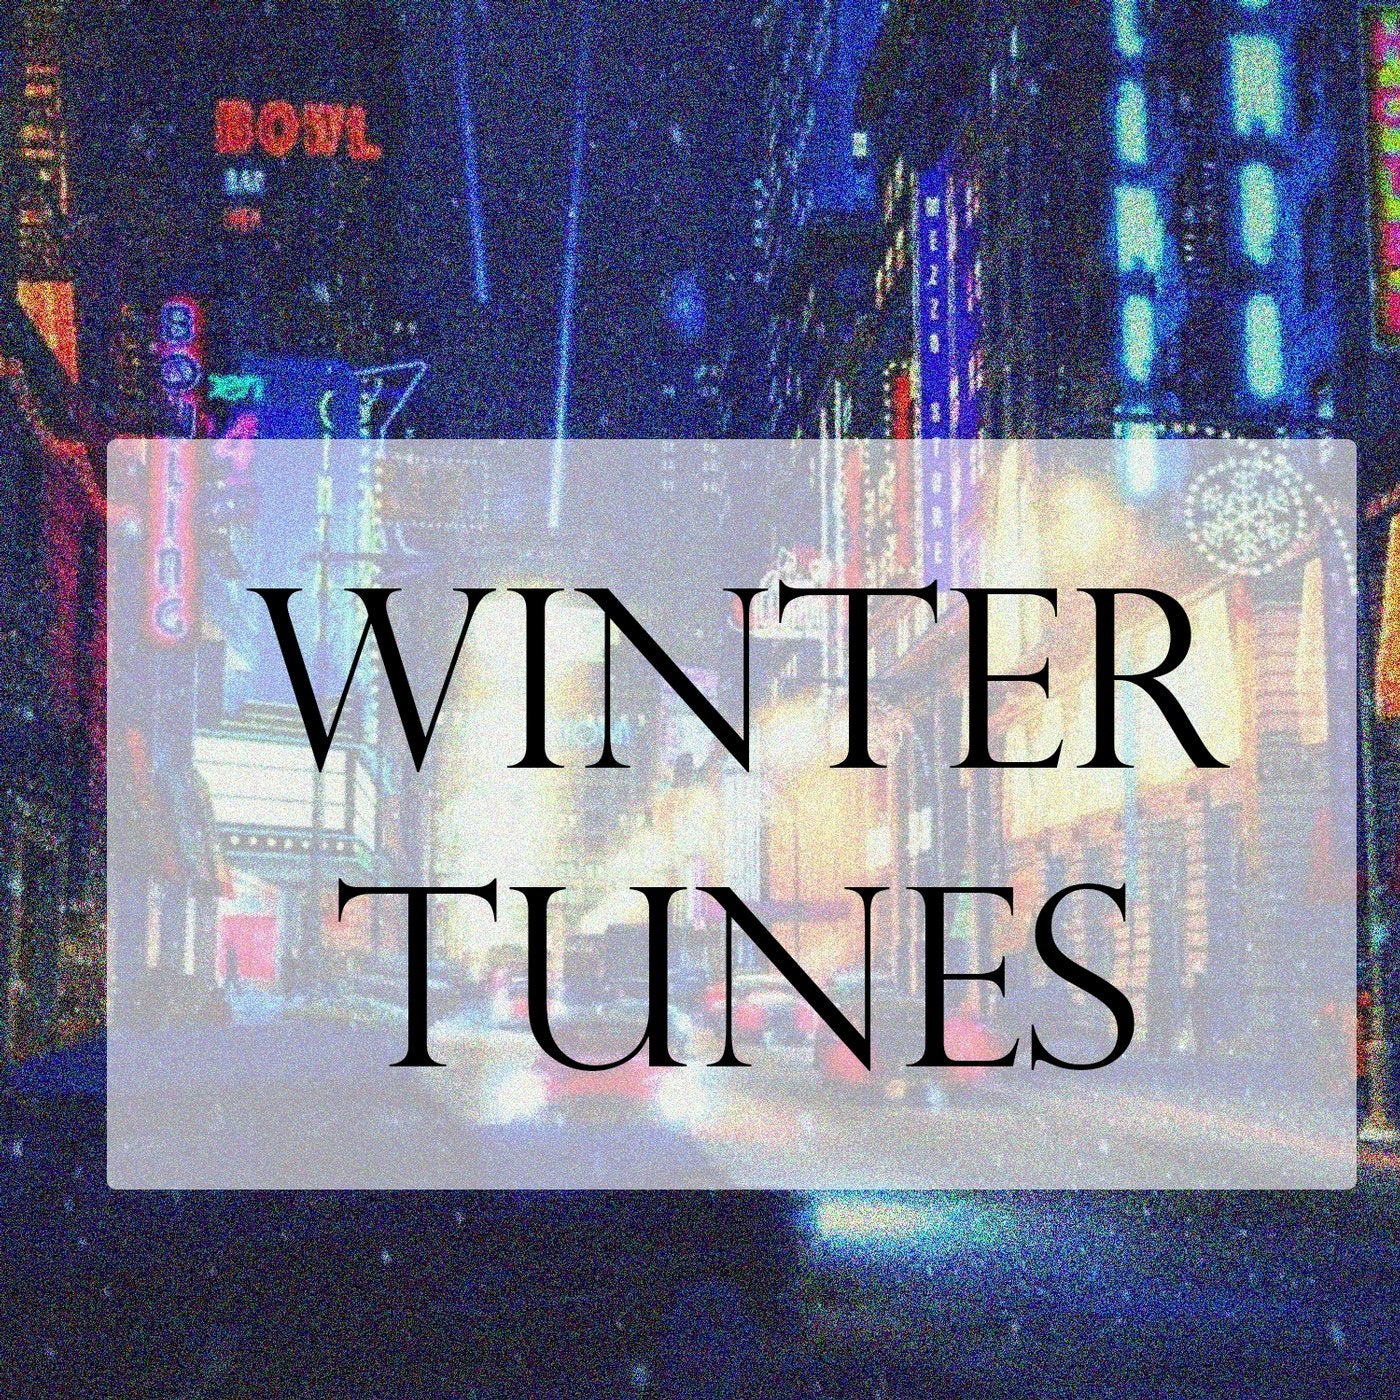 Winter Tunes Minimal